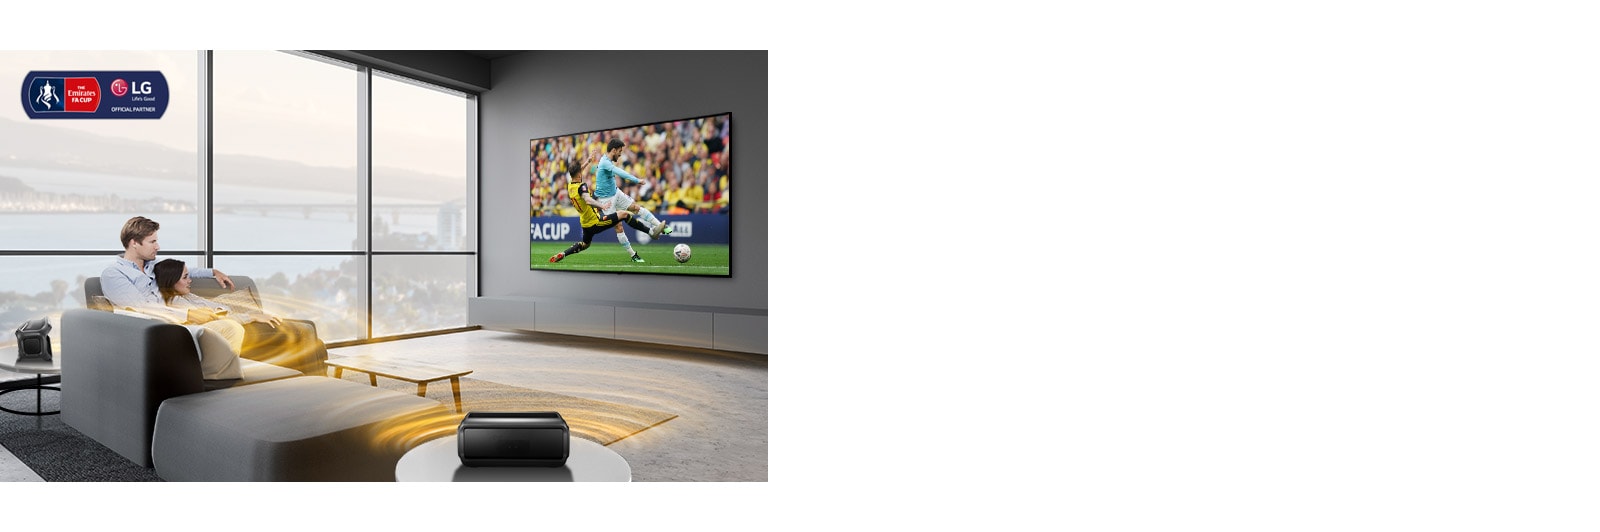 رجل وامرأة يشاهدان لعبة رياضية على شاشة التلفزيون في غرفة المعيشة مع مكبرات صوت خلفية بلوتوث